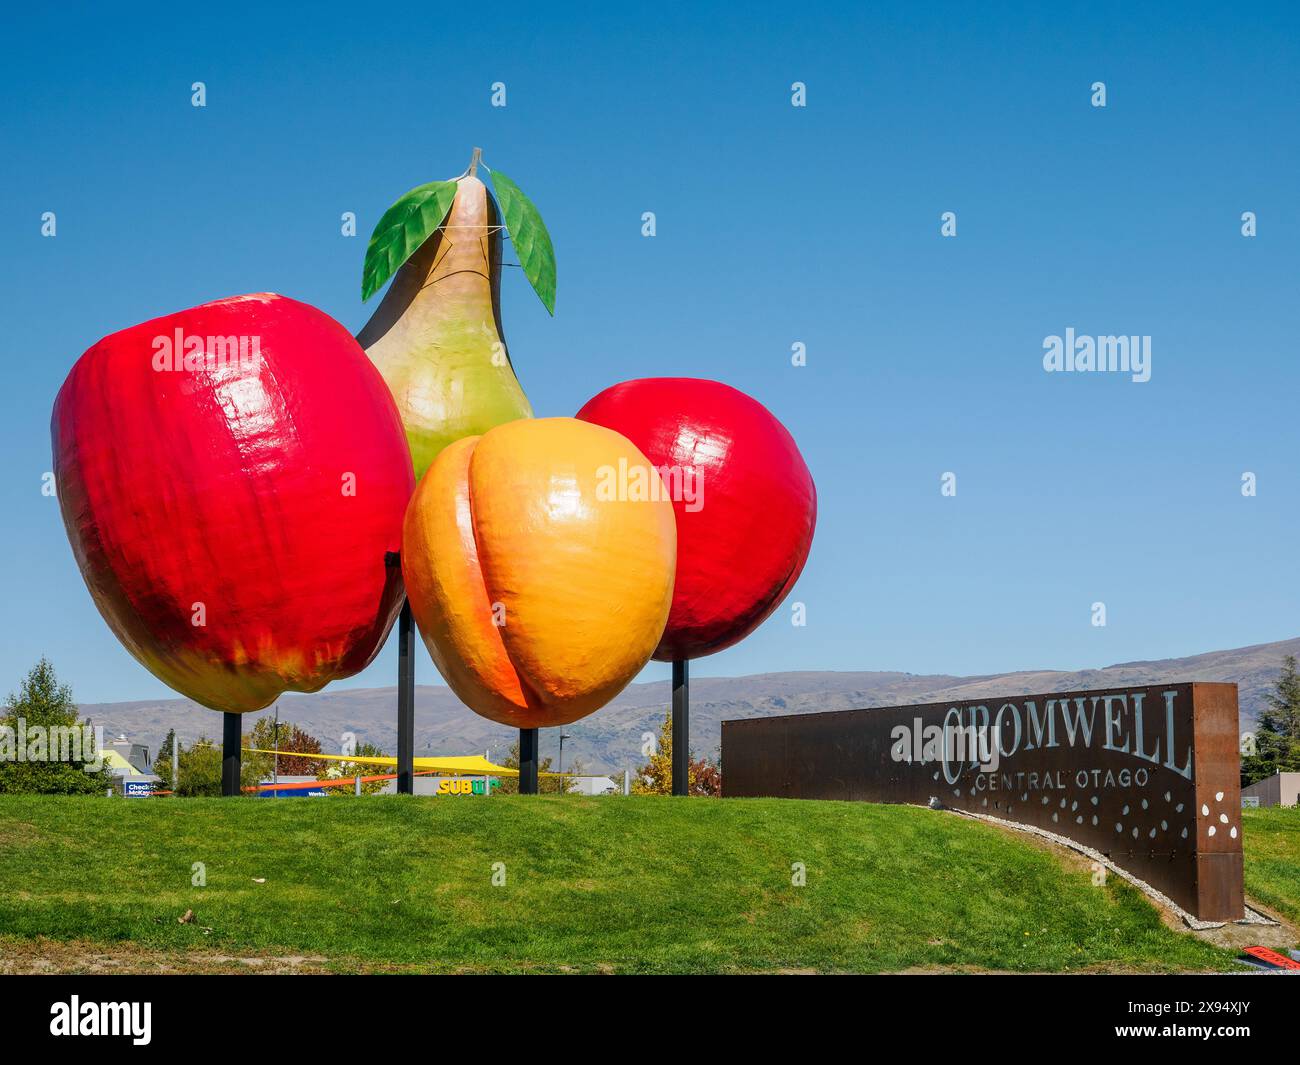 Frutta gigante a Cromwell, una piccola città nel mezzo di una regione di frutteti e vigneti, Cromwell, Otago, South Island, nuova Zelanda, Pacifico Foto Stock